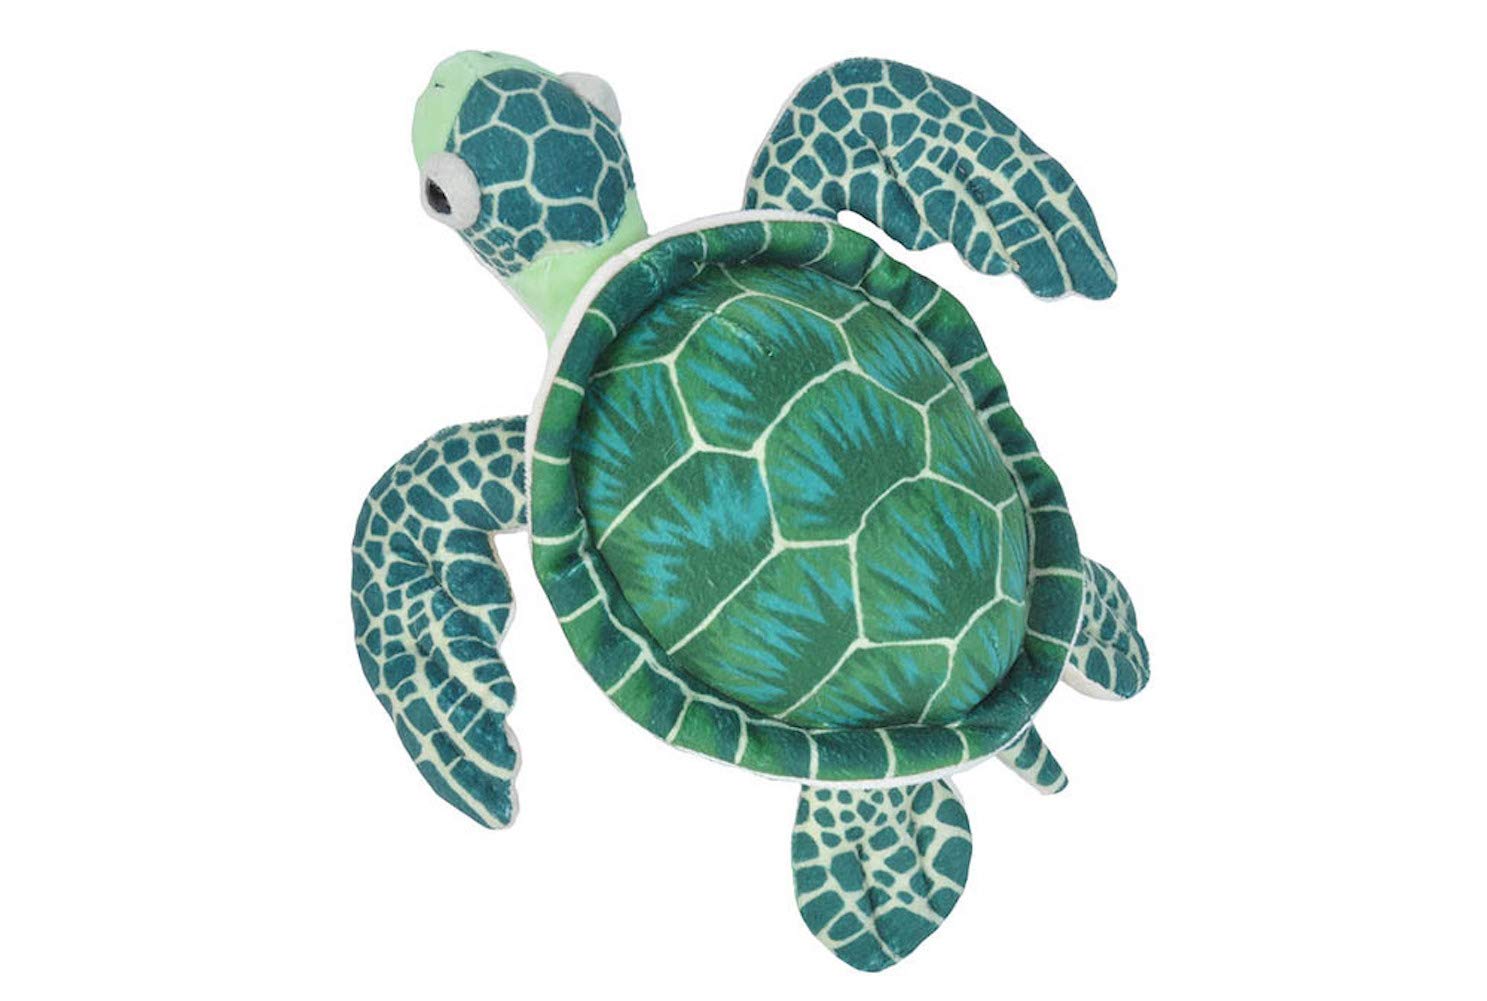 Sea Turtle Plush Toy